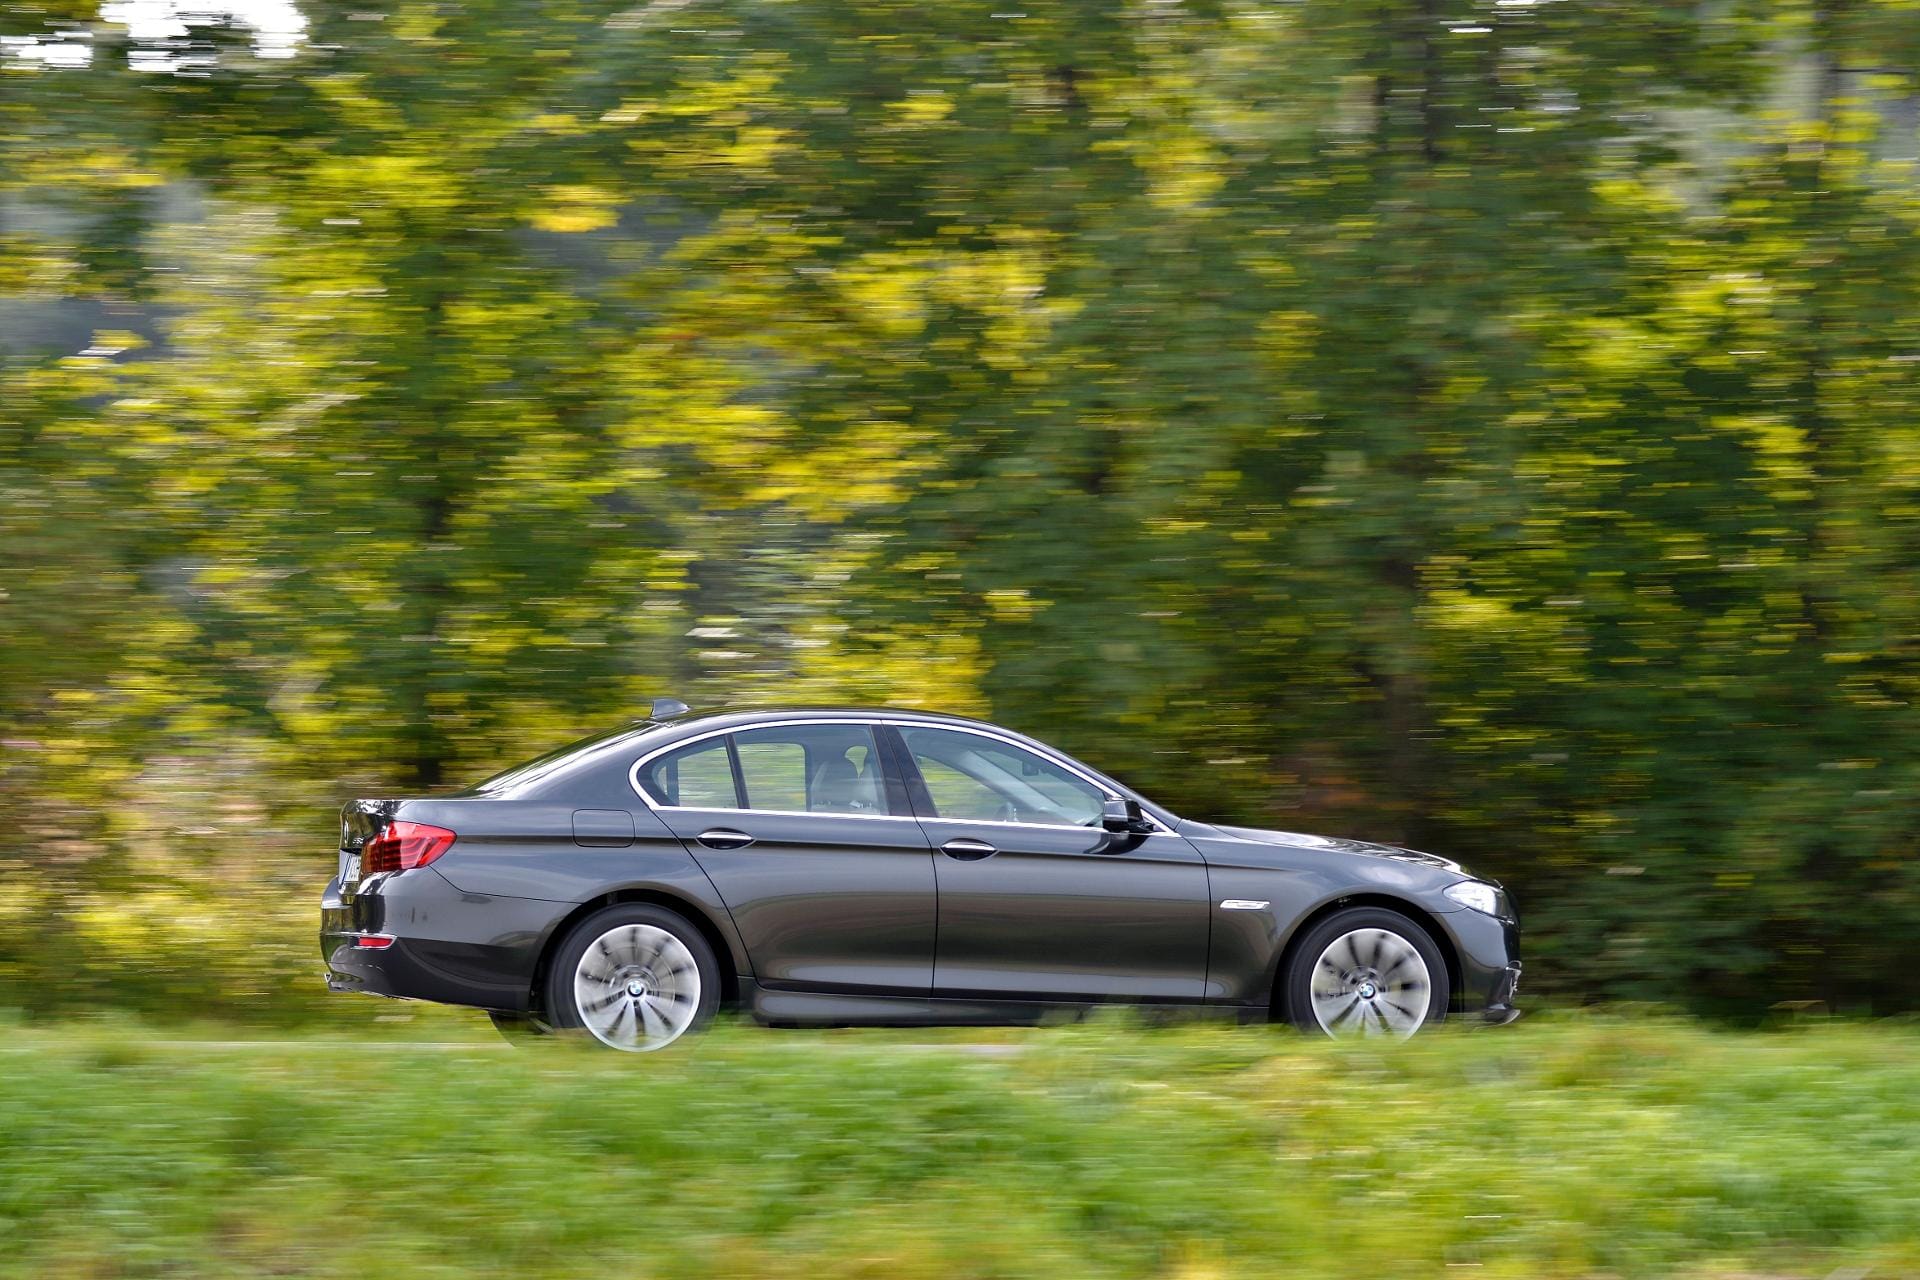 Top Ten Autodiebstahl 2014, Platz 10: BMW 535d. Quote 8,9 von 1000 Fahrzeugen; durchschnittlicher Schadenaufwand 18.276 Euro.